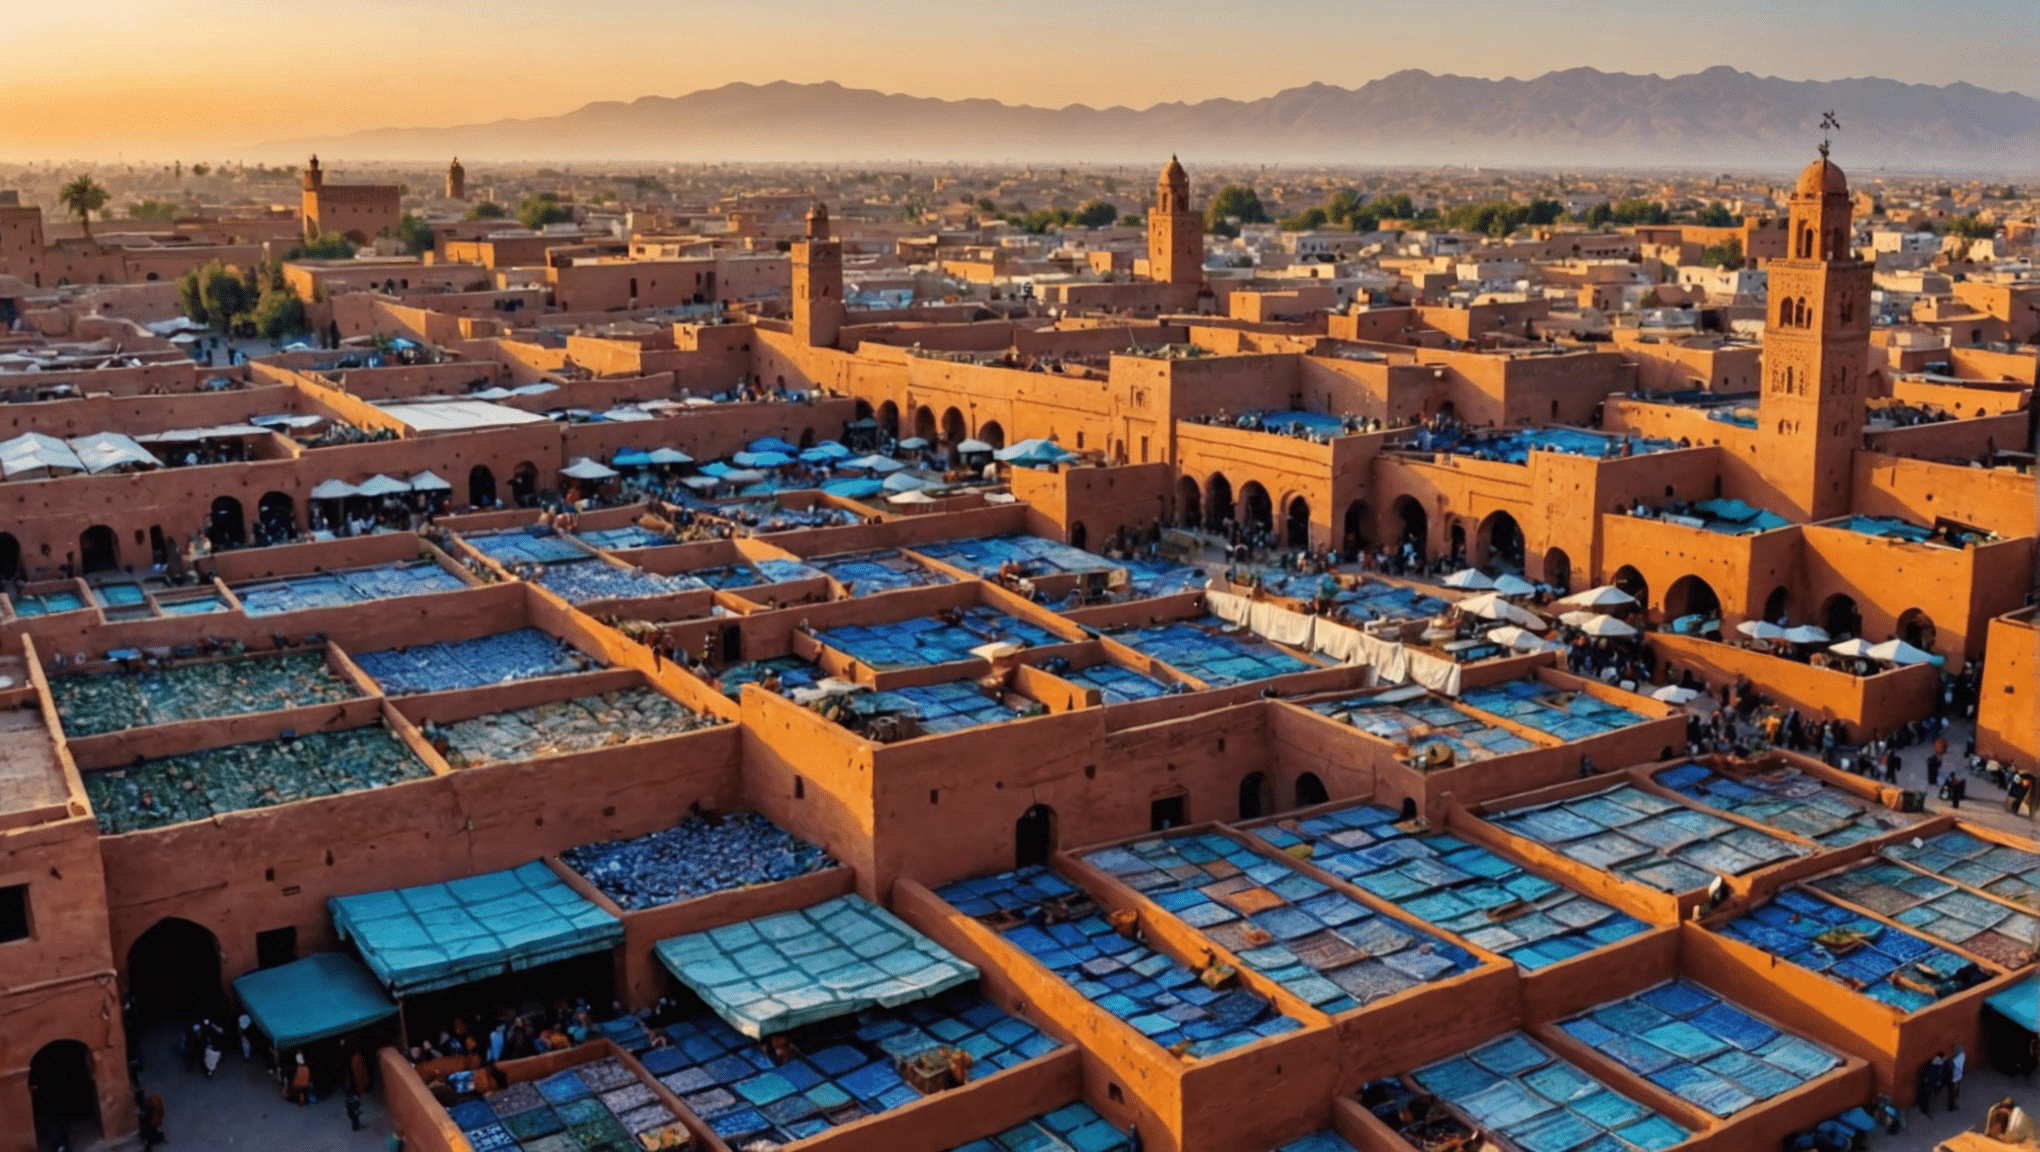 scopri le 10 migliori attività imperdibili a Marrakech come consigliato da un esperto locale e sfrutta al massimo la tua visita in questa vibrante città.